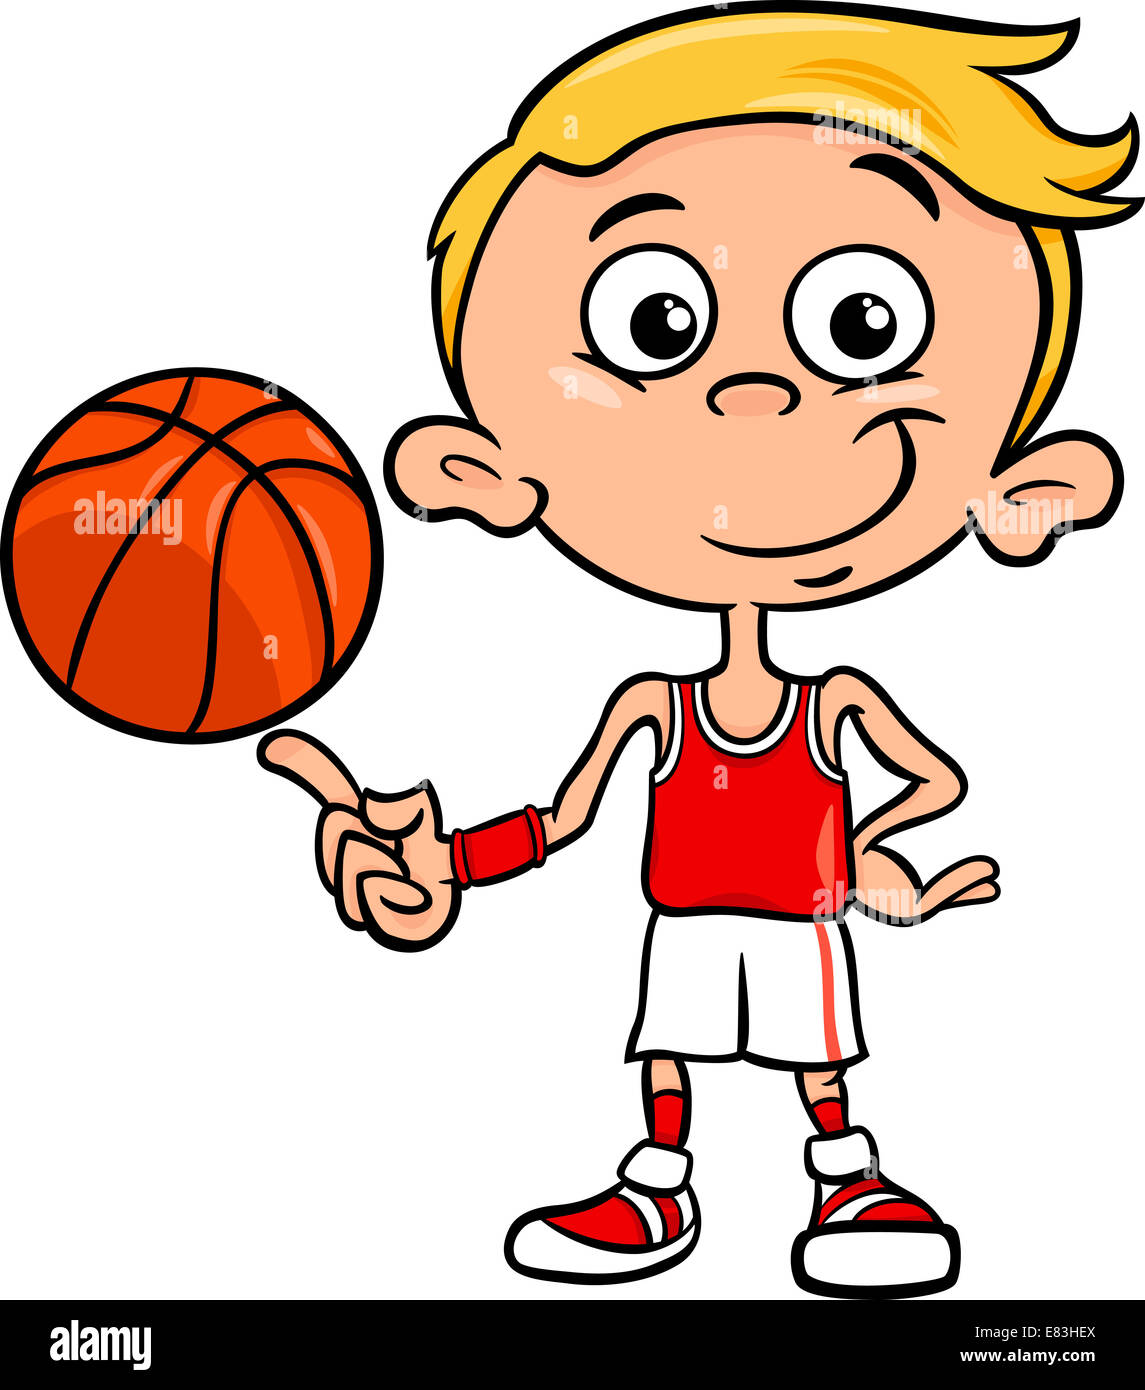 https://c8.alamy.com/compit/e83hex/cartoon-illustrazione-del-ragazzo-divertente-giocatore-di-basket-con-sfera-e83hex.jpg